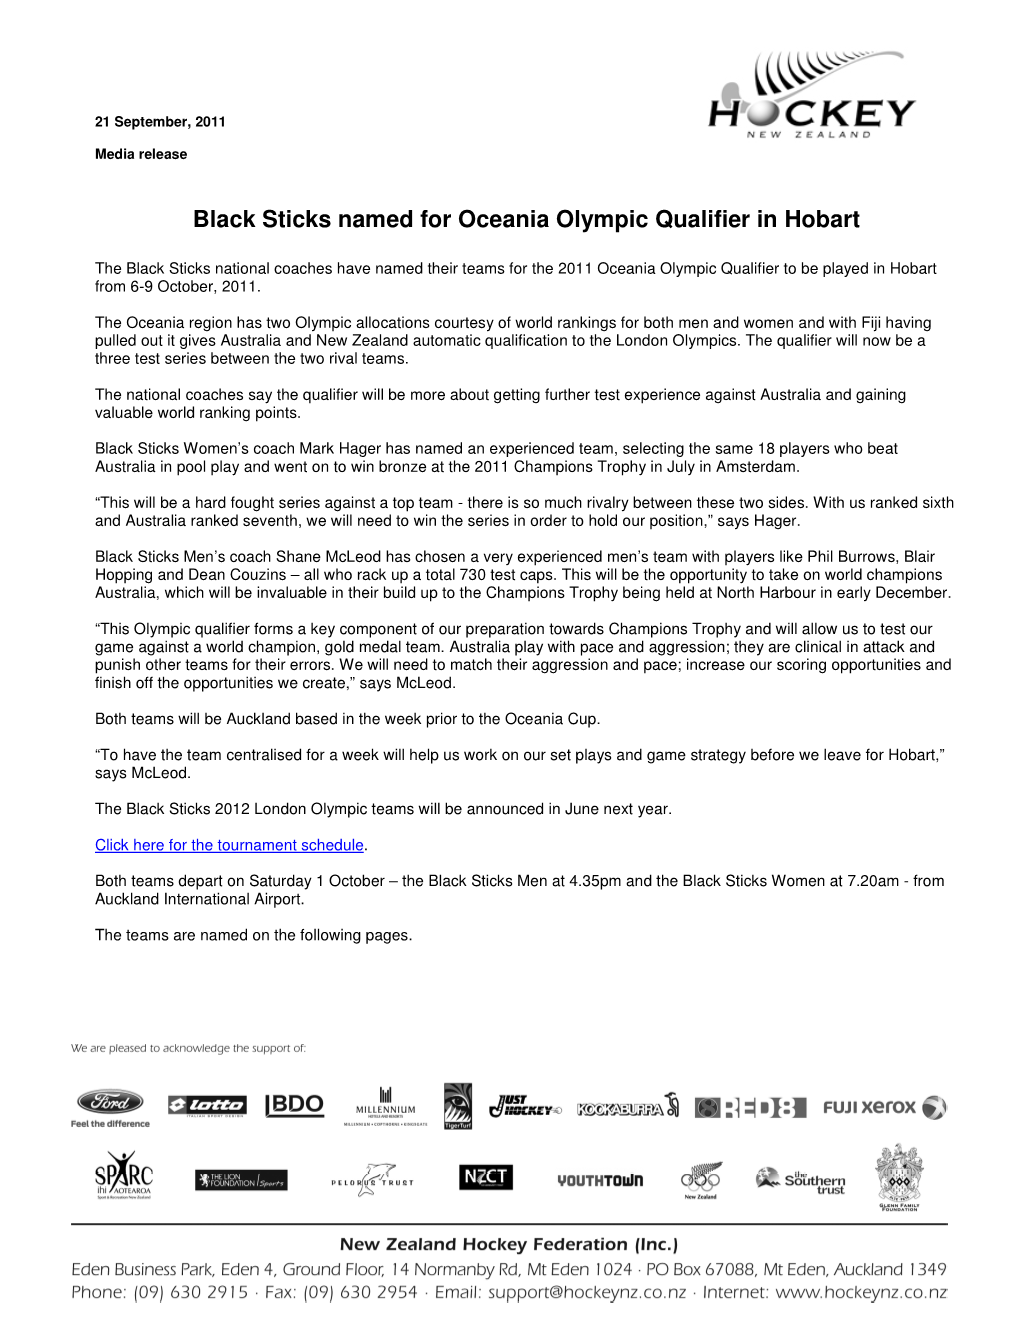 Black Sticks Named for Oceania Olympic Qualifier in Hobart